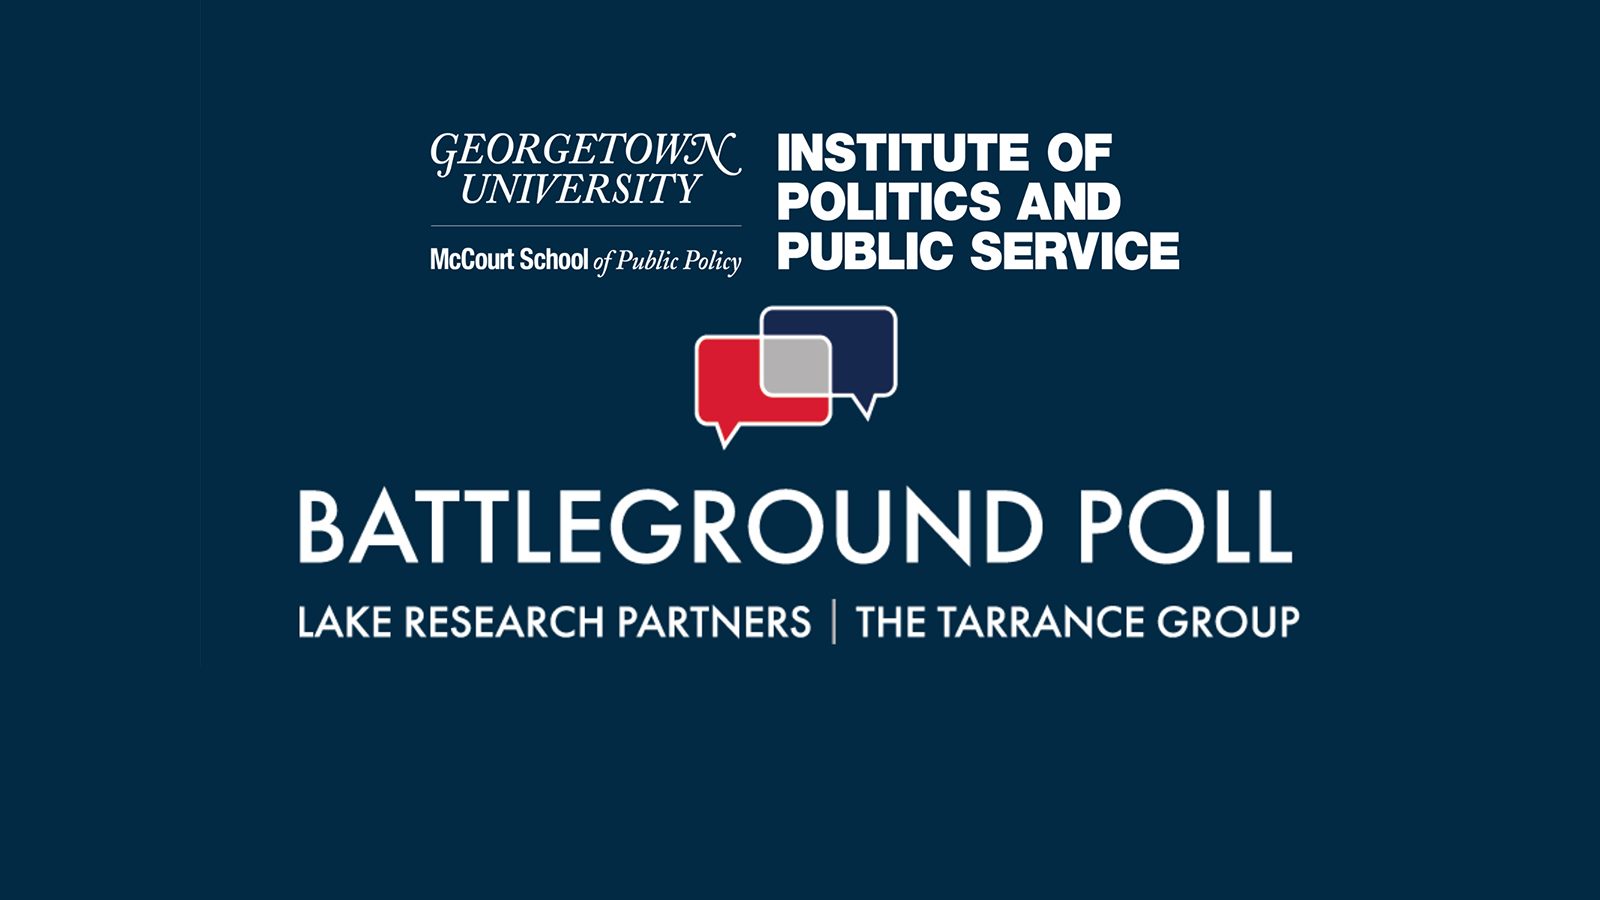 Battleground Poll logo & GU Politics logo